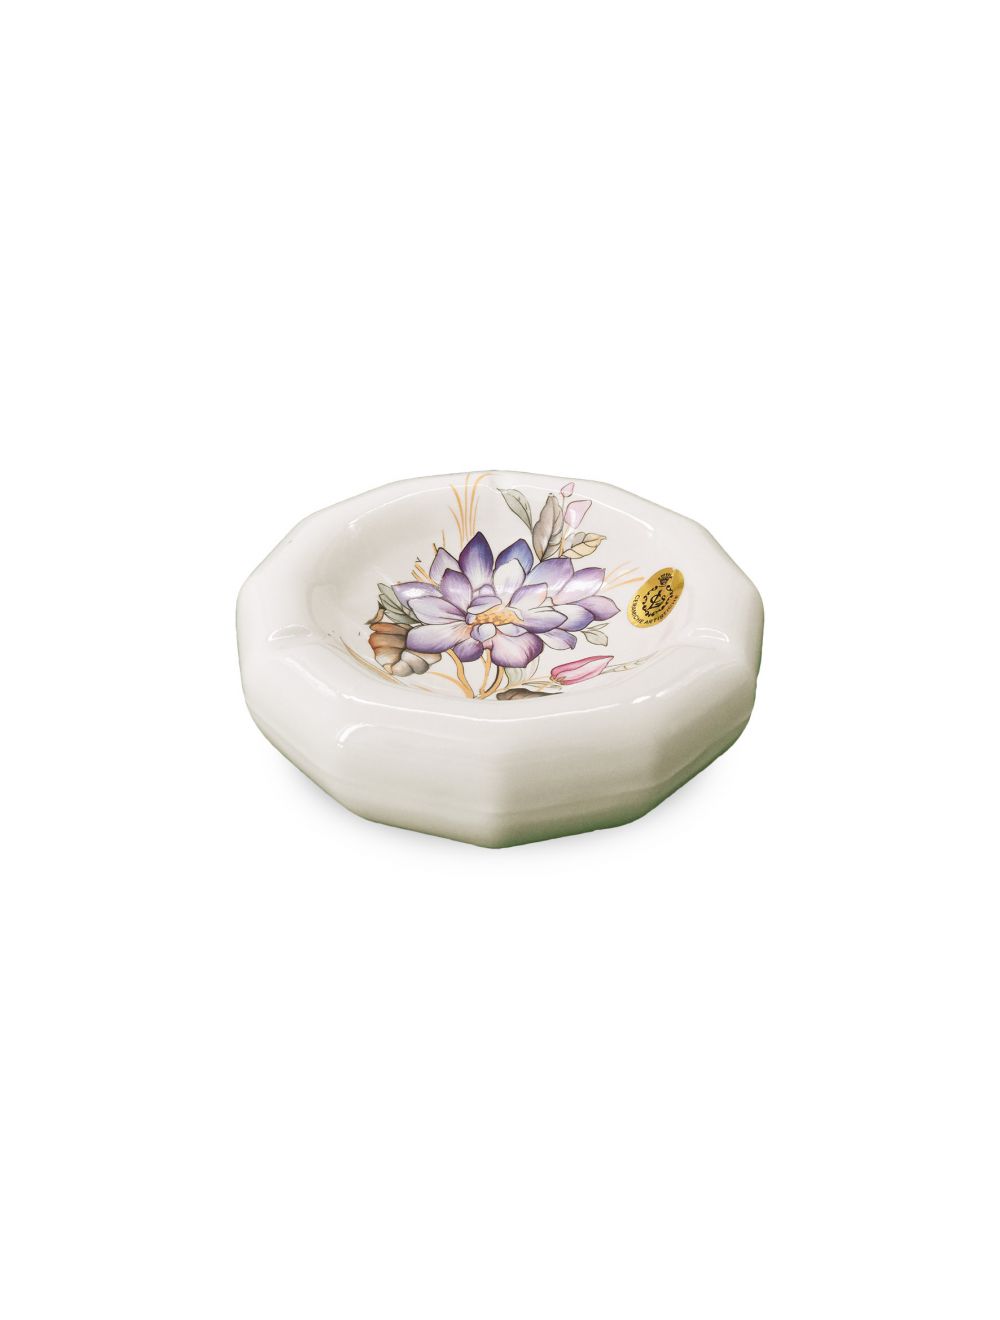 White Ceramic Ashtray With Flower Design